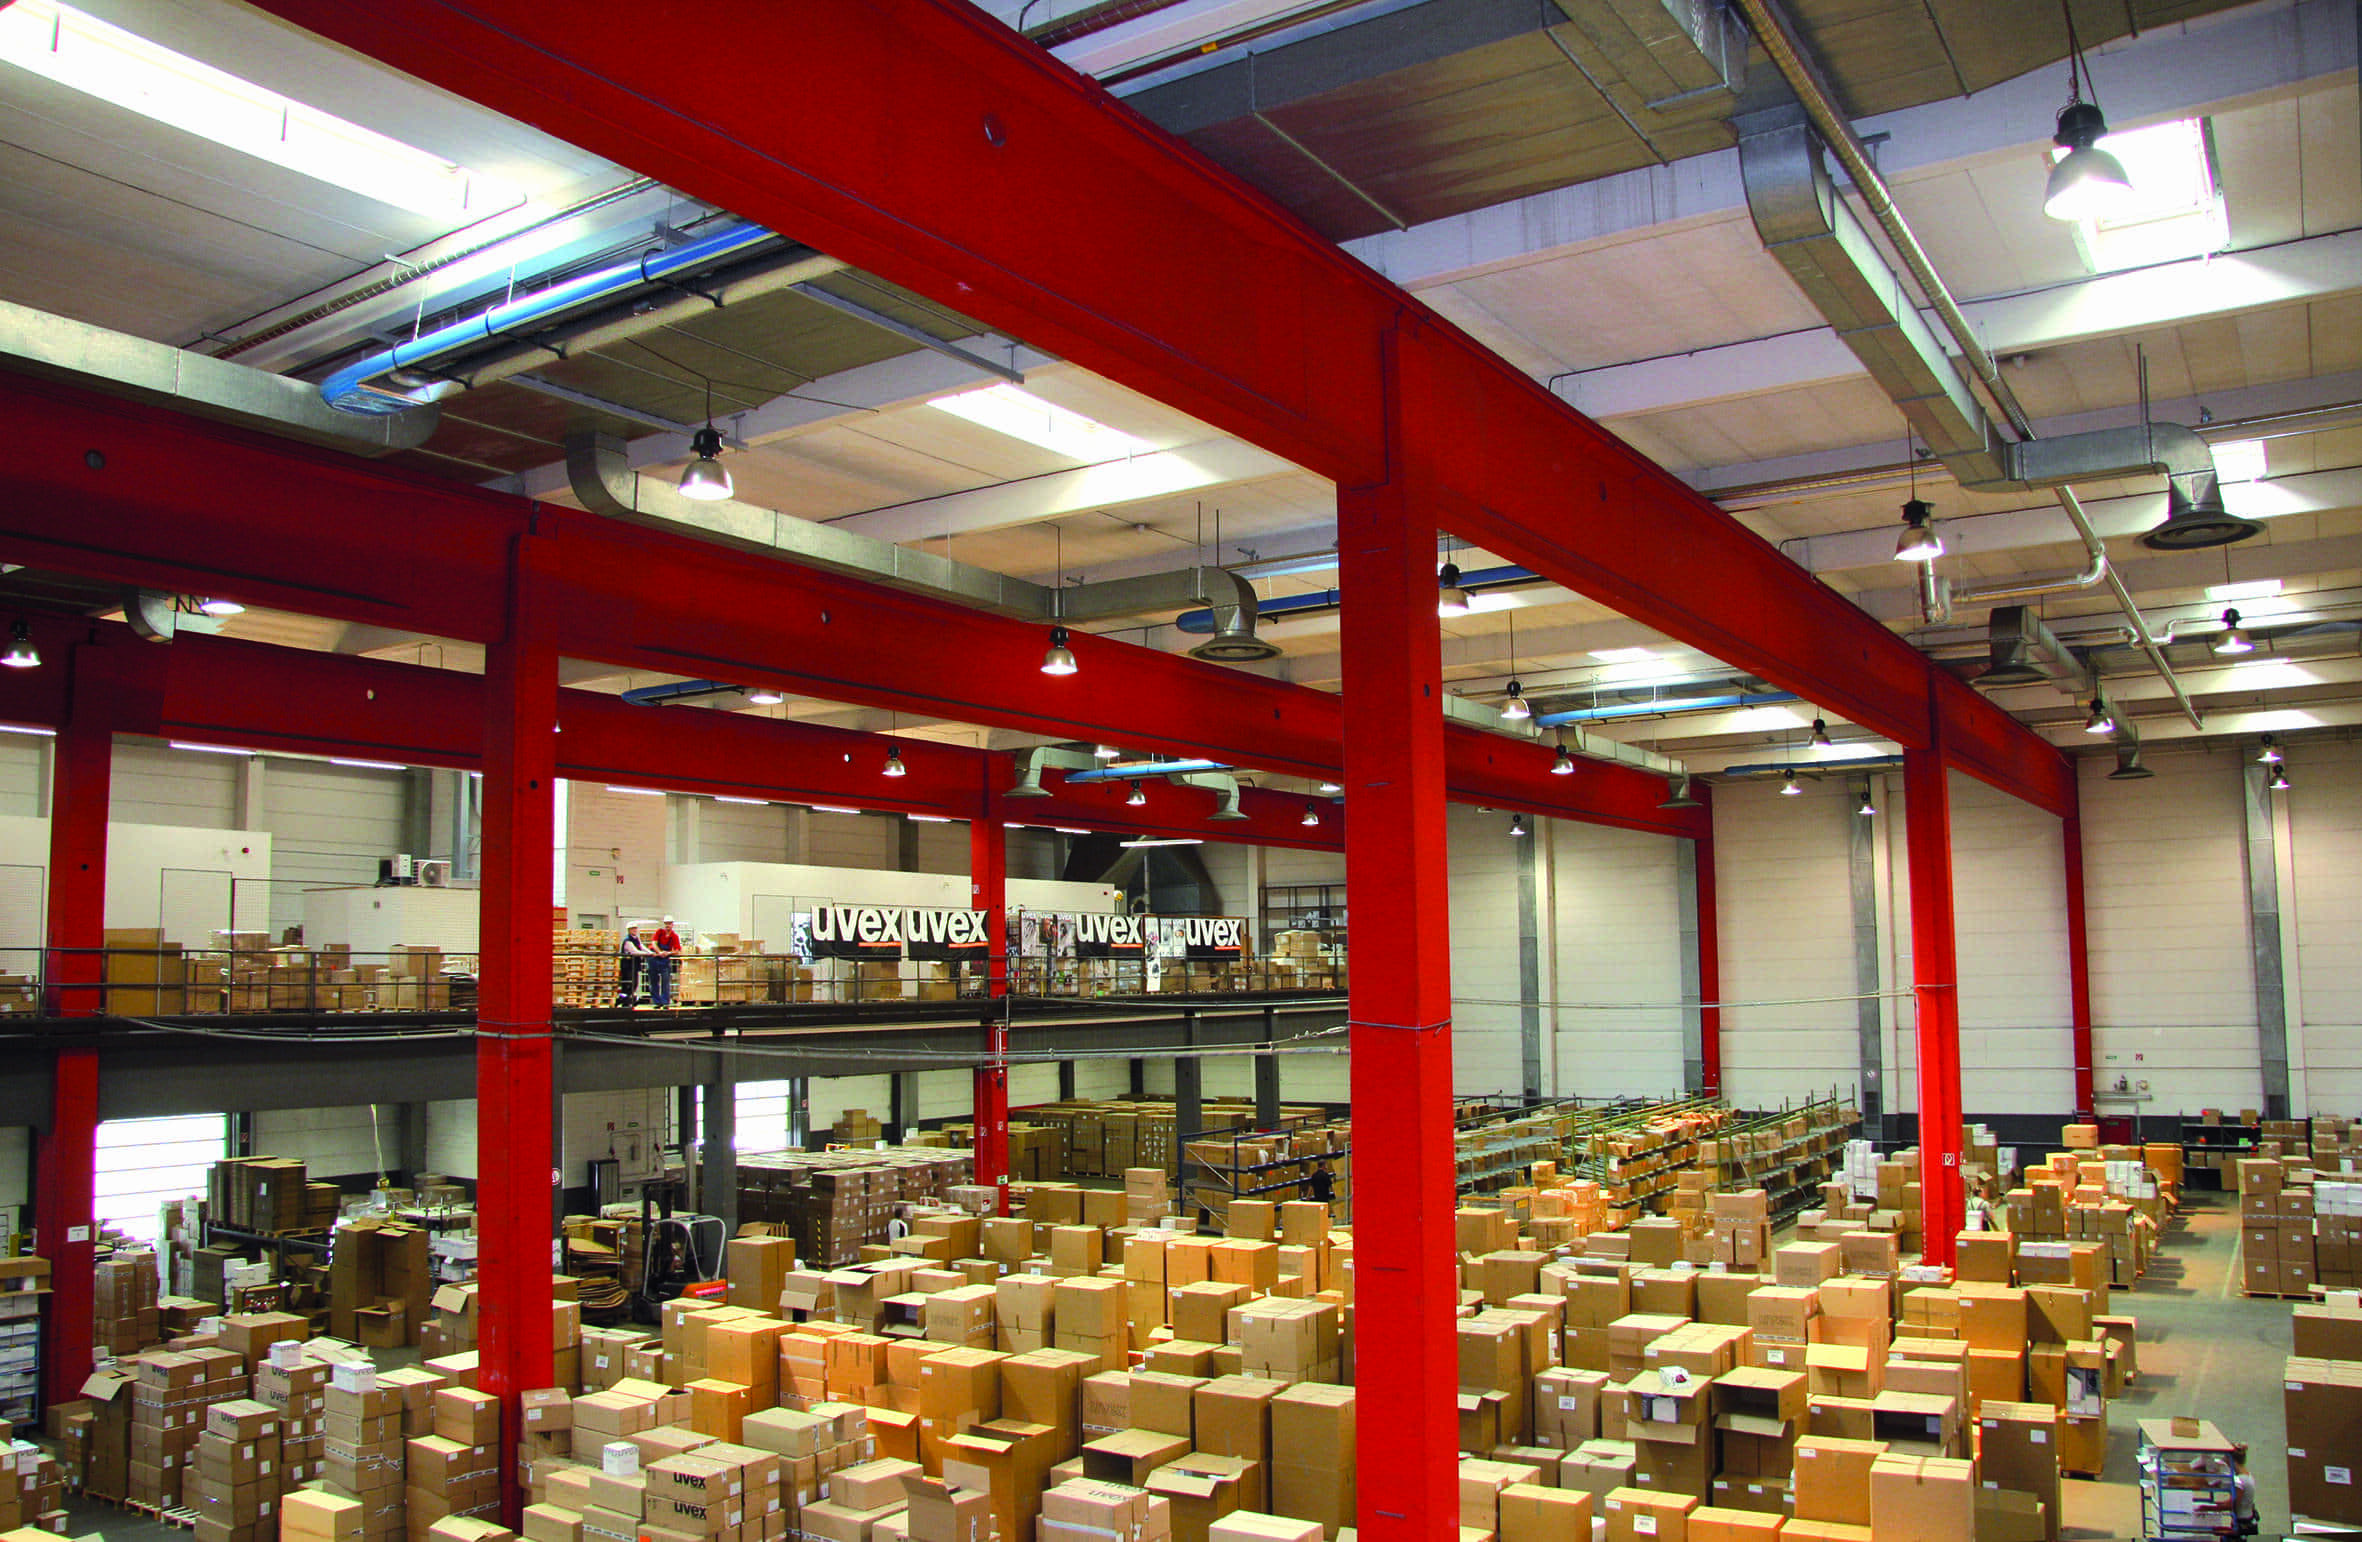 Lagerhalle der Firma uvex mit Paketen, Produktionshalle, die energieeffizient durch eine Infrarotheizung der Firma KÜBLER GmbH erwärmt wird.